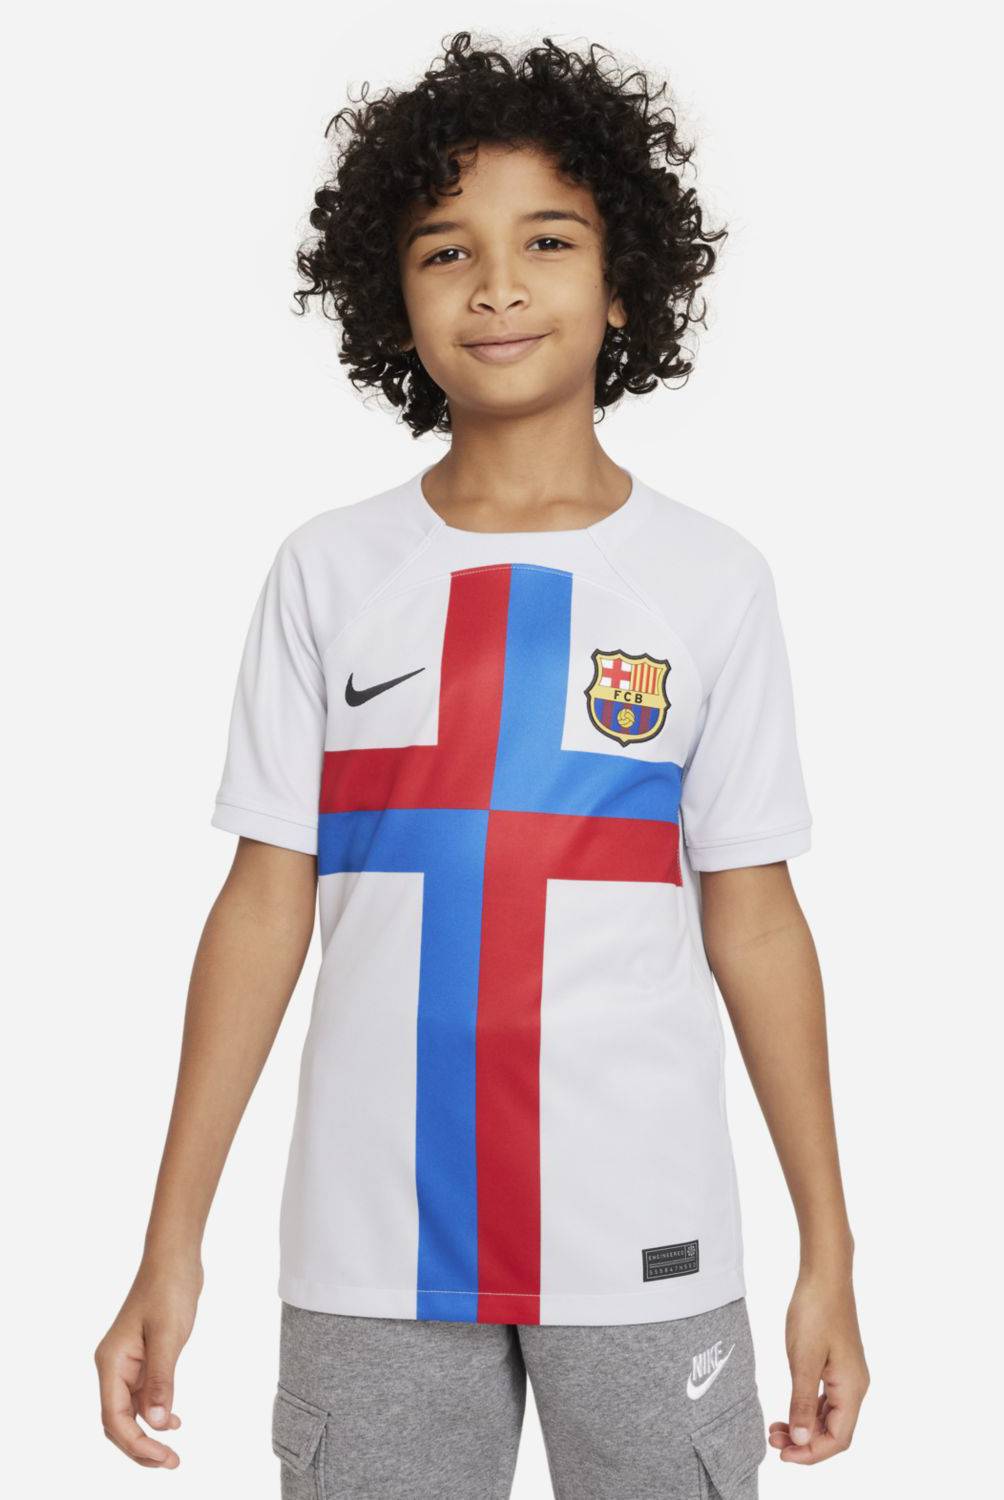 NIKE - Camiseta De Fútbol Fc Barcelona Niño Nike